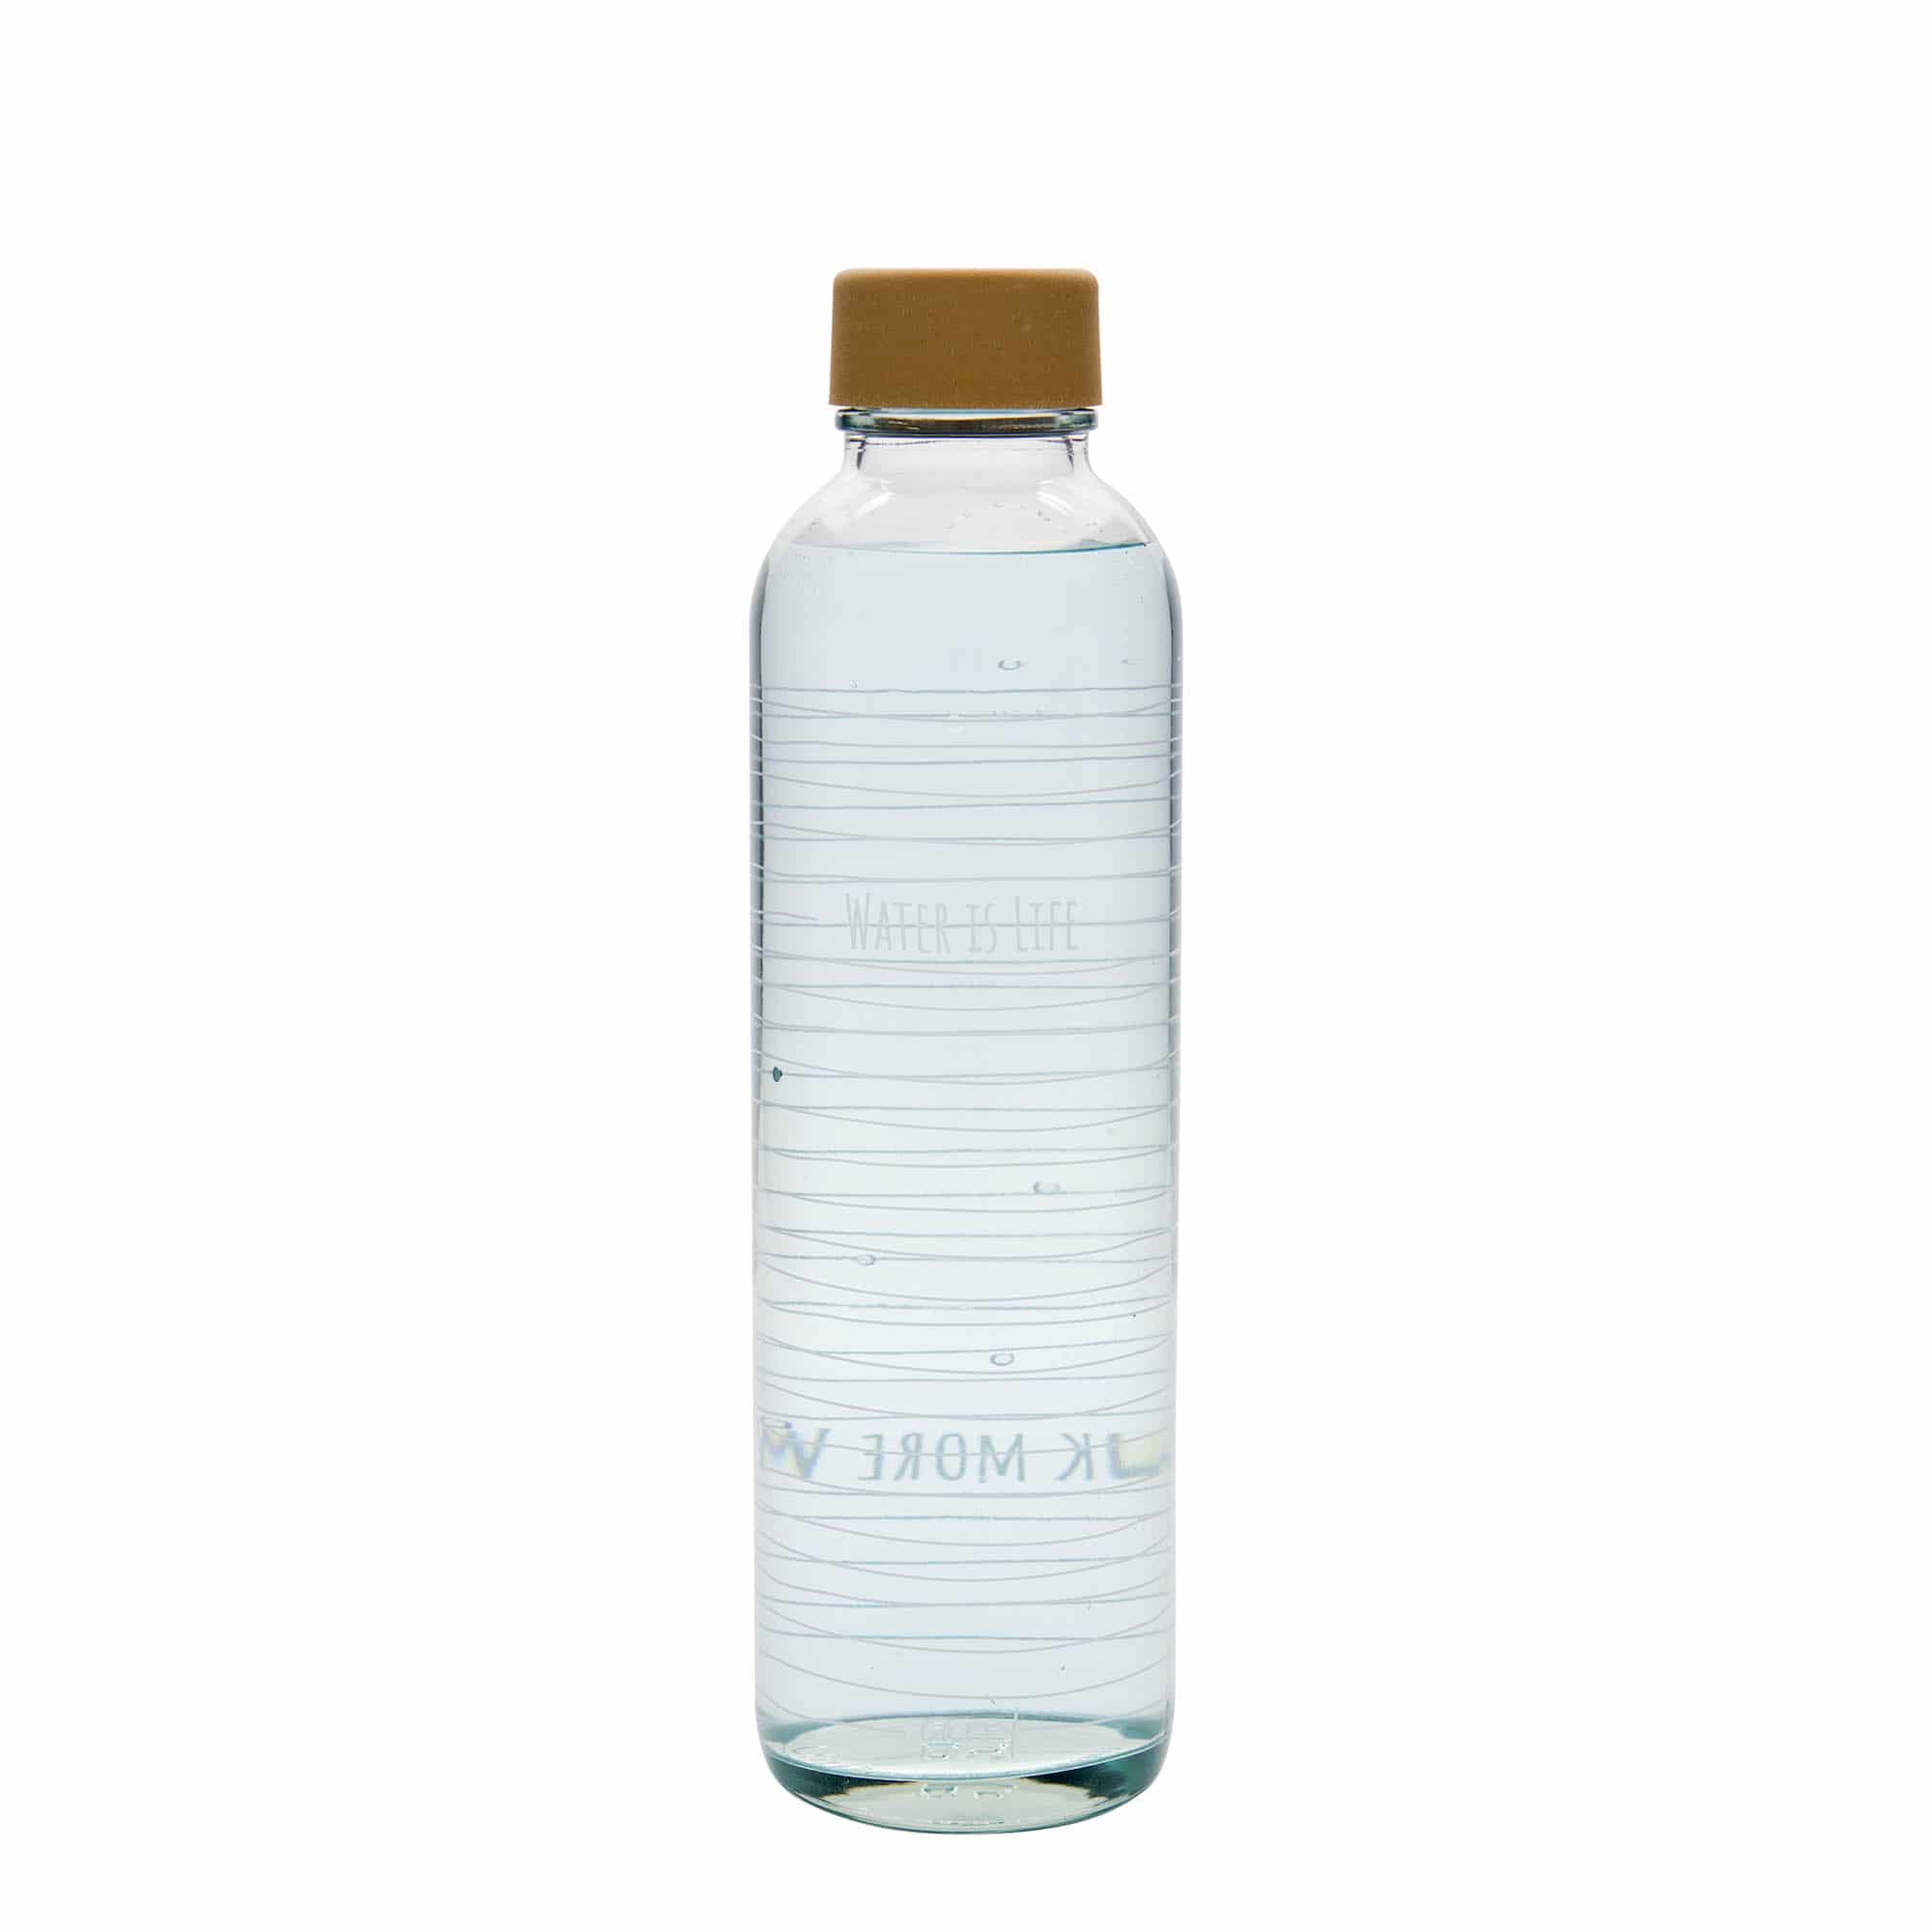 700 ml-es ivópalack CARRY Bottle, motívum: Water is Life, szájnyílás: csavaros kupak